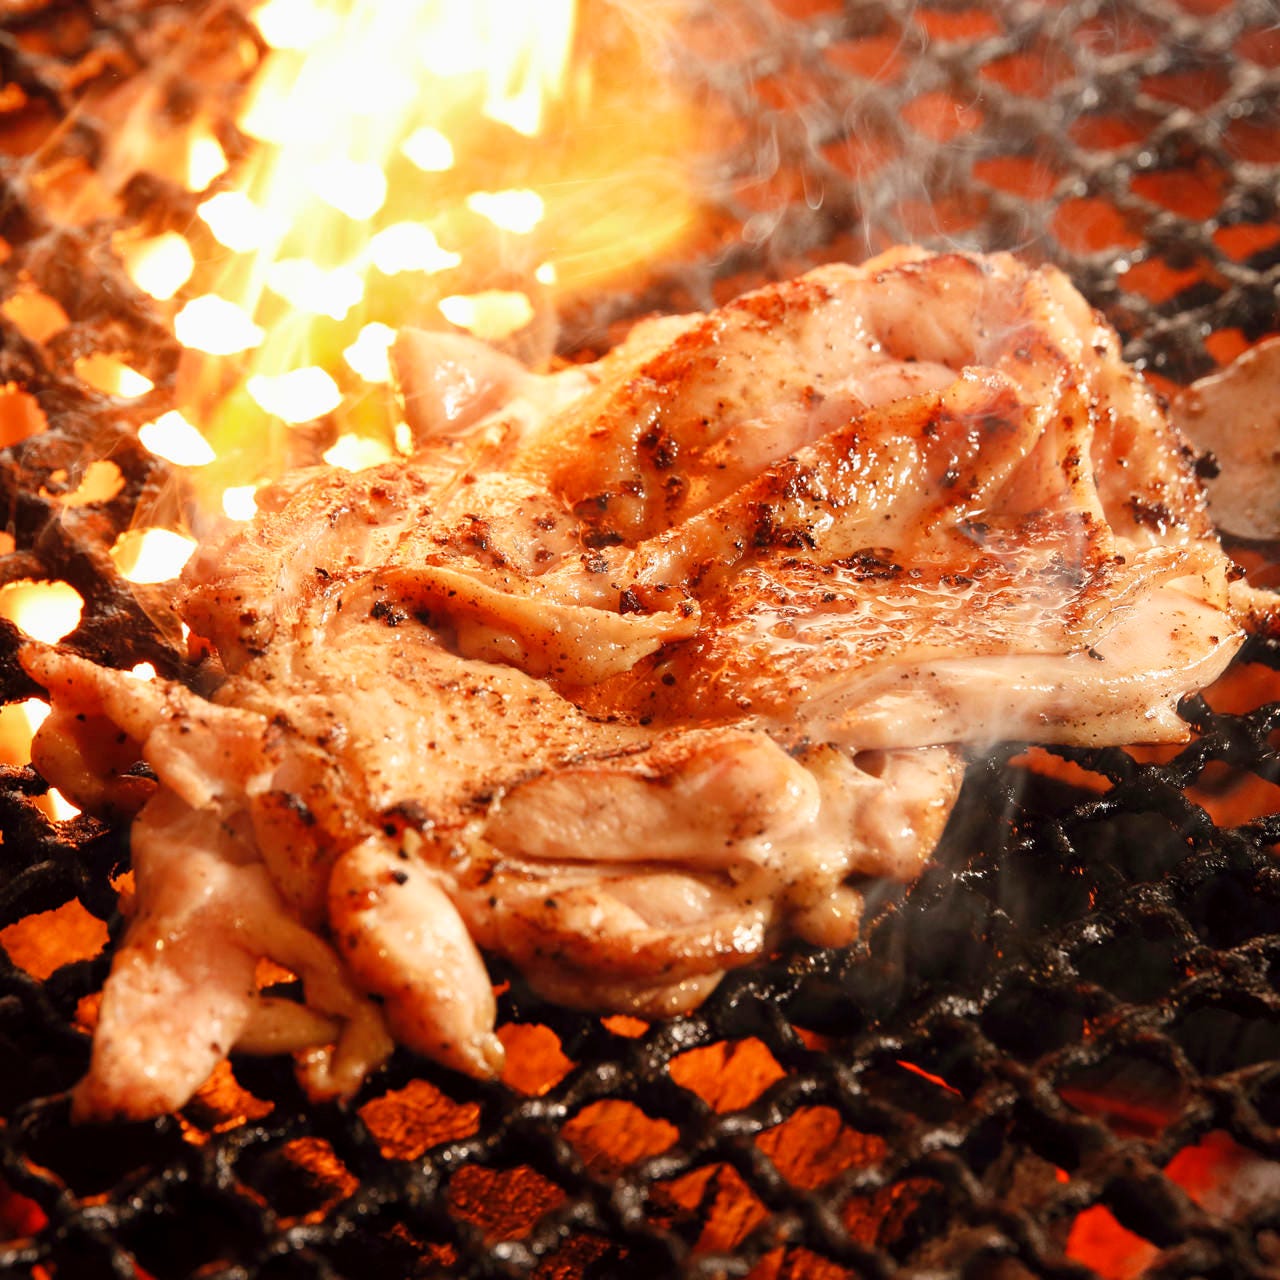 炭火で豪快に焼いた旨みたっぷりの多彩な鶏料理をご堪能ください